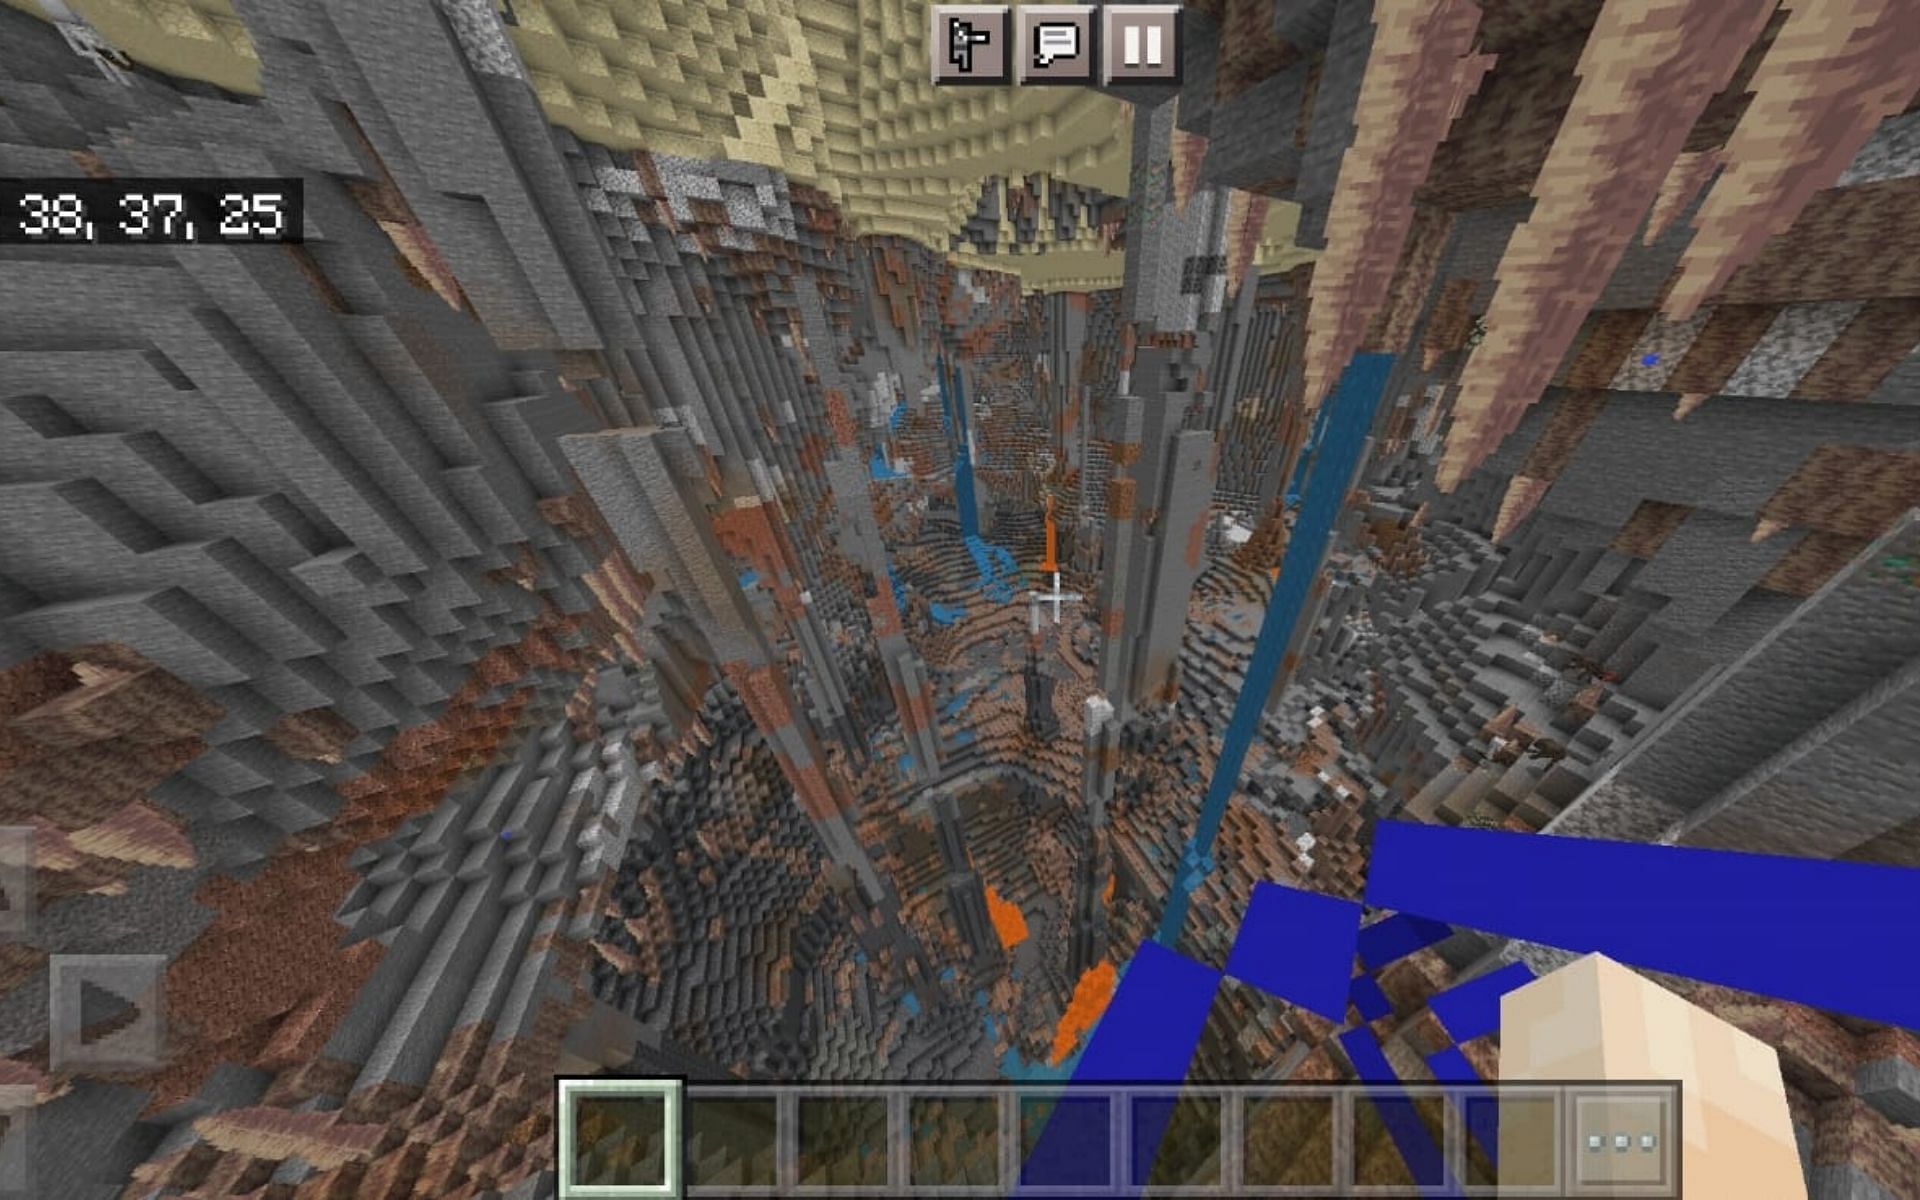 Dripstone cave under a Desert (Image via Minecraft)